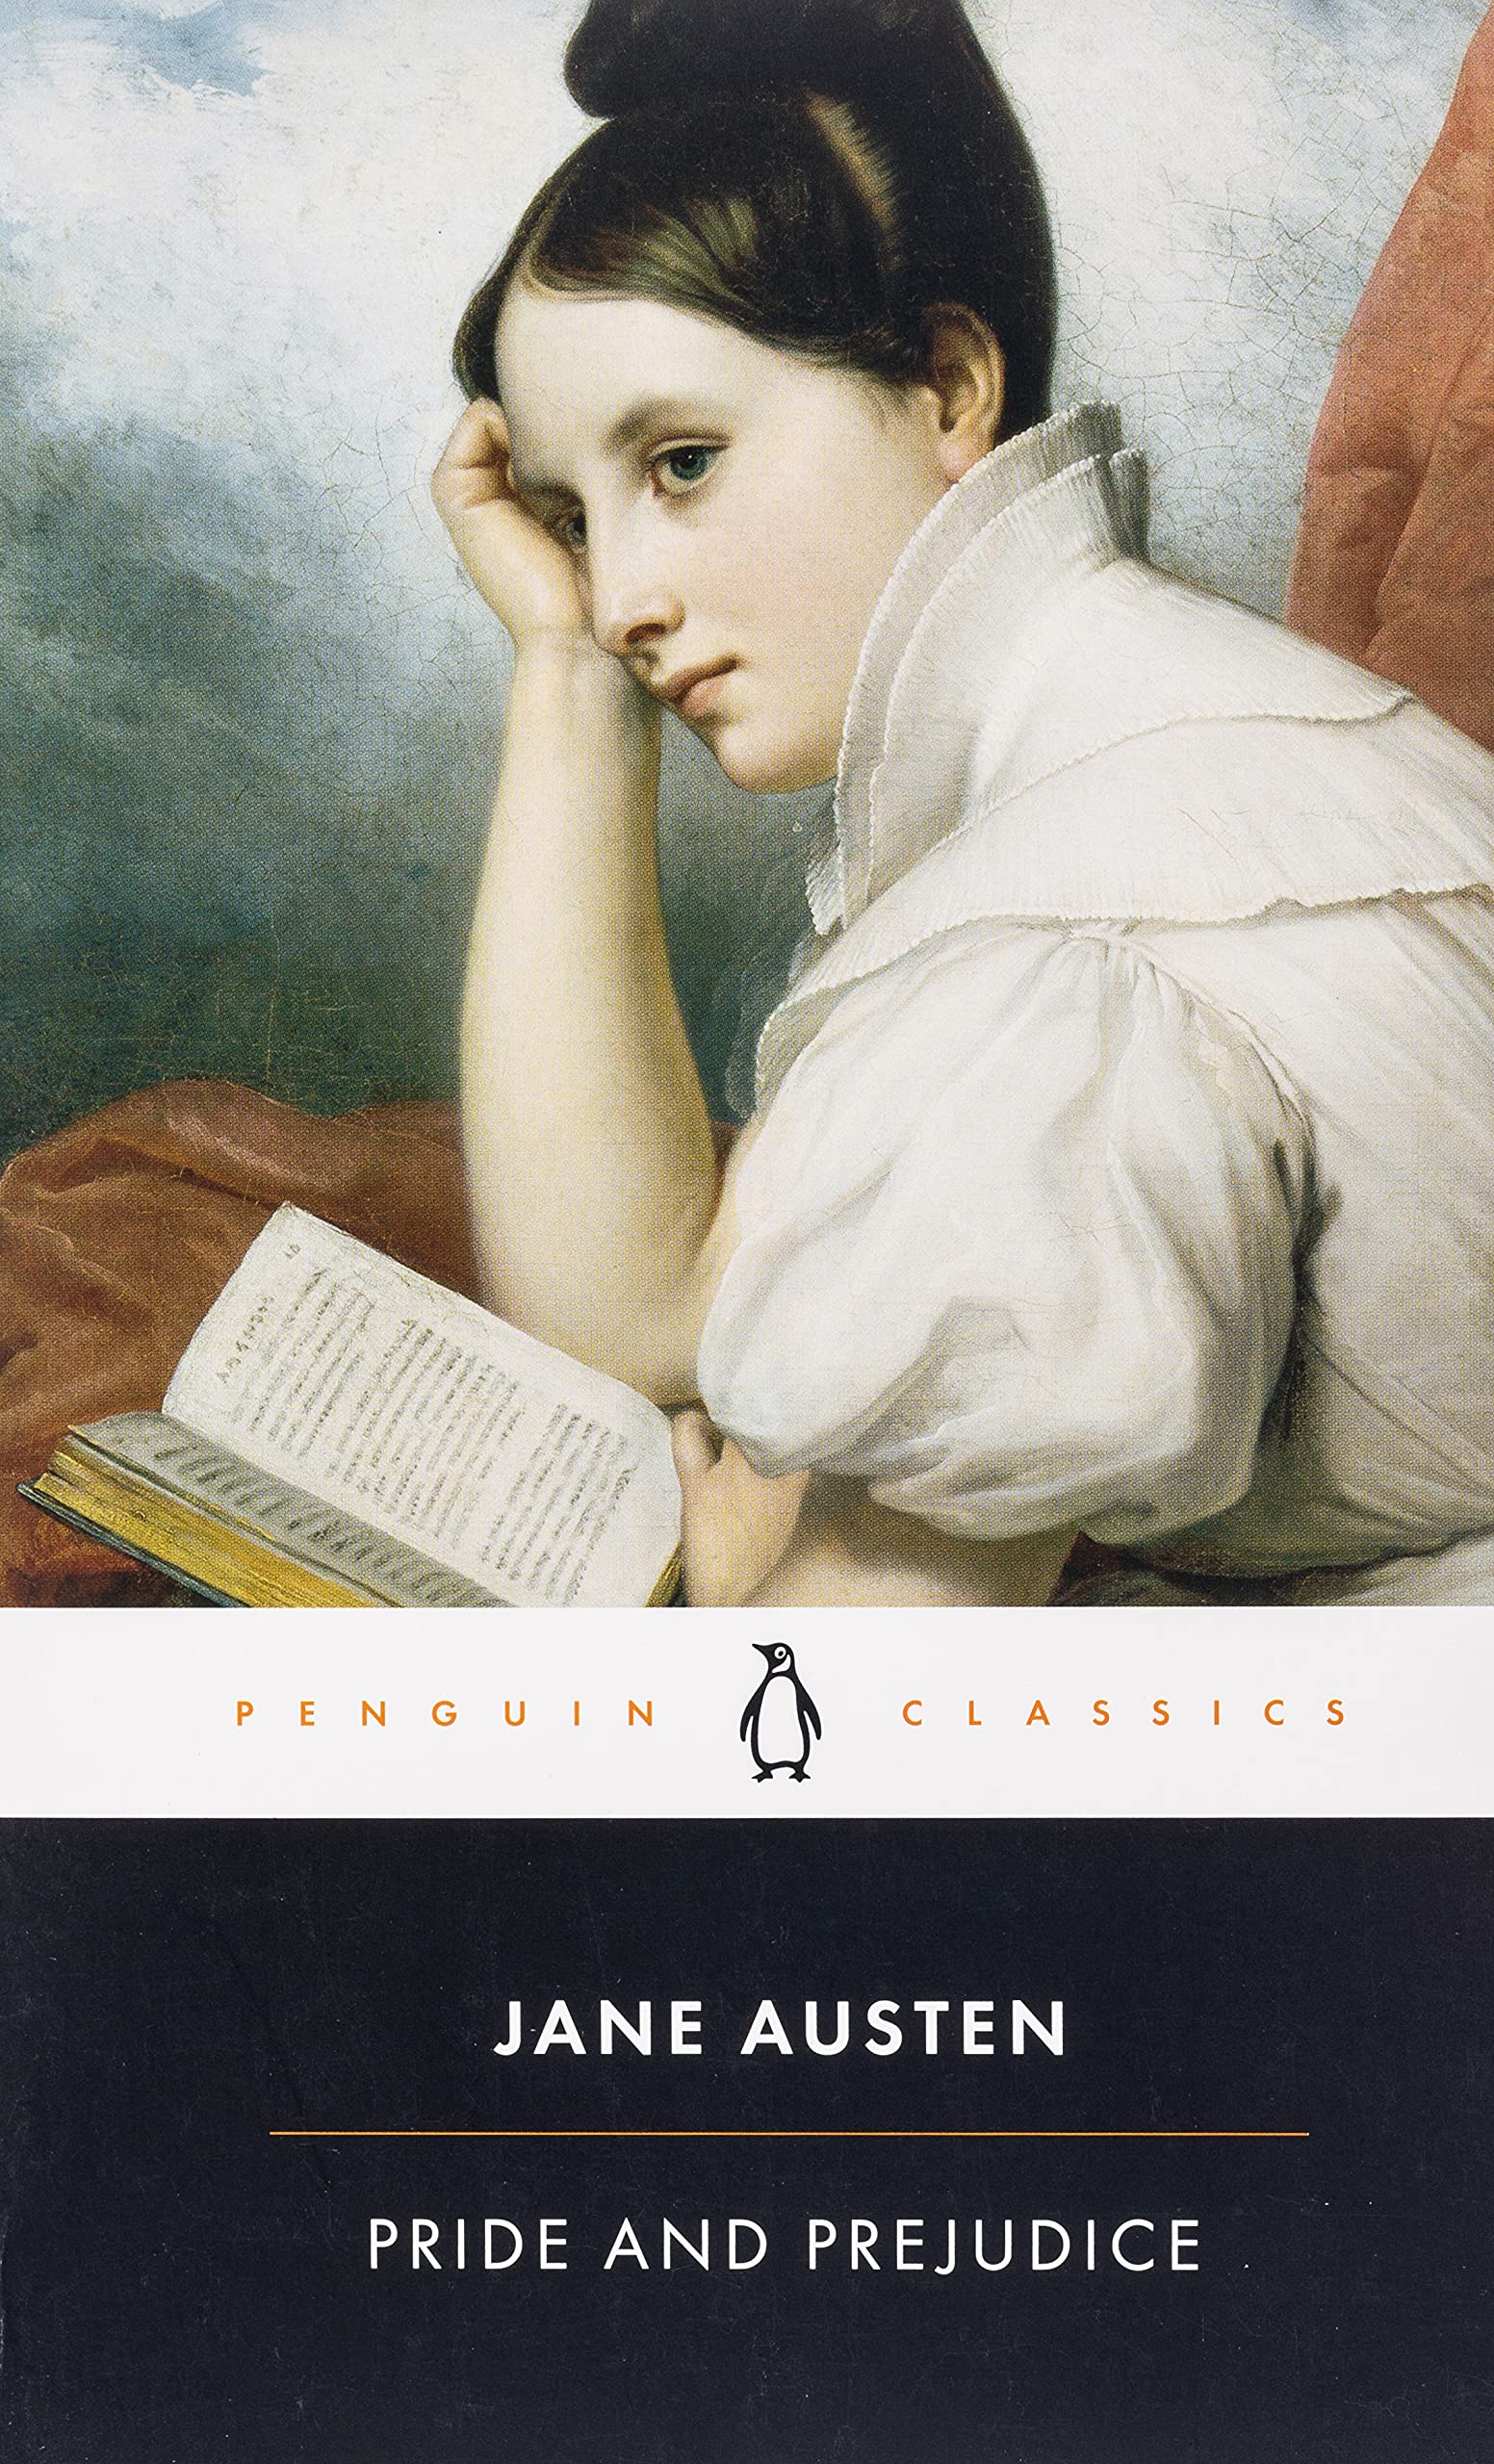 Jane Austen’s ‘Pride and Prejudice’